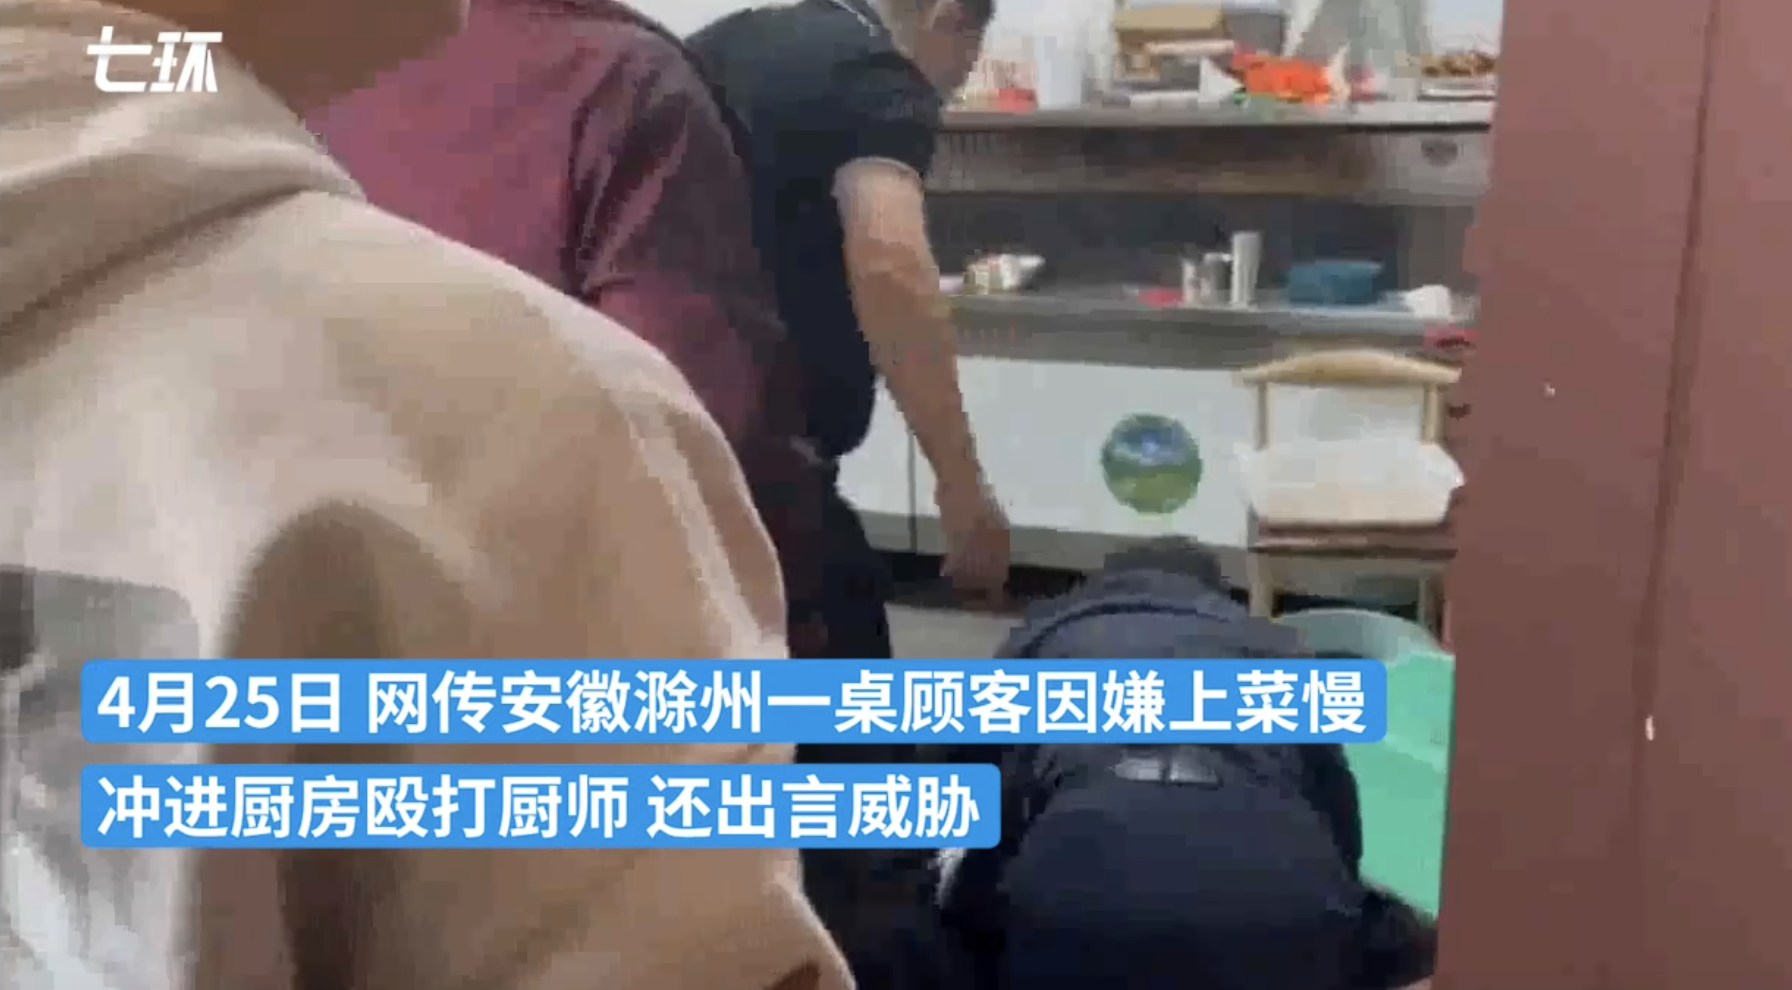 安徽滁州一桌顾客因嫌上菜慢 冲进厨房殴打厨师